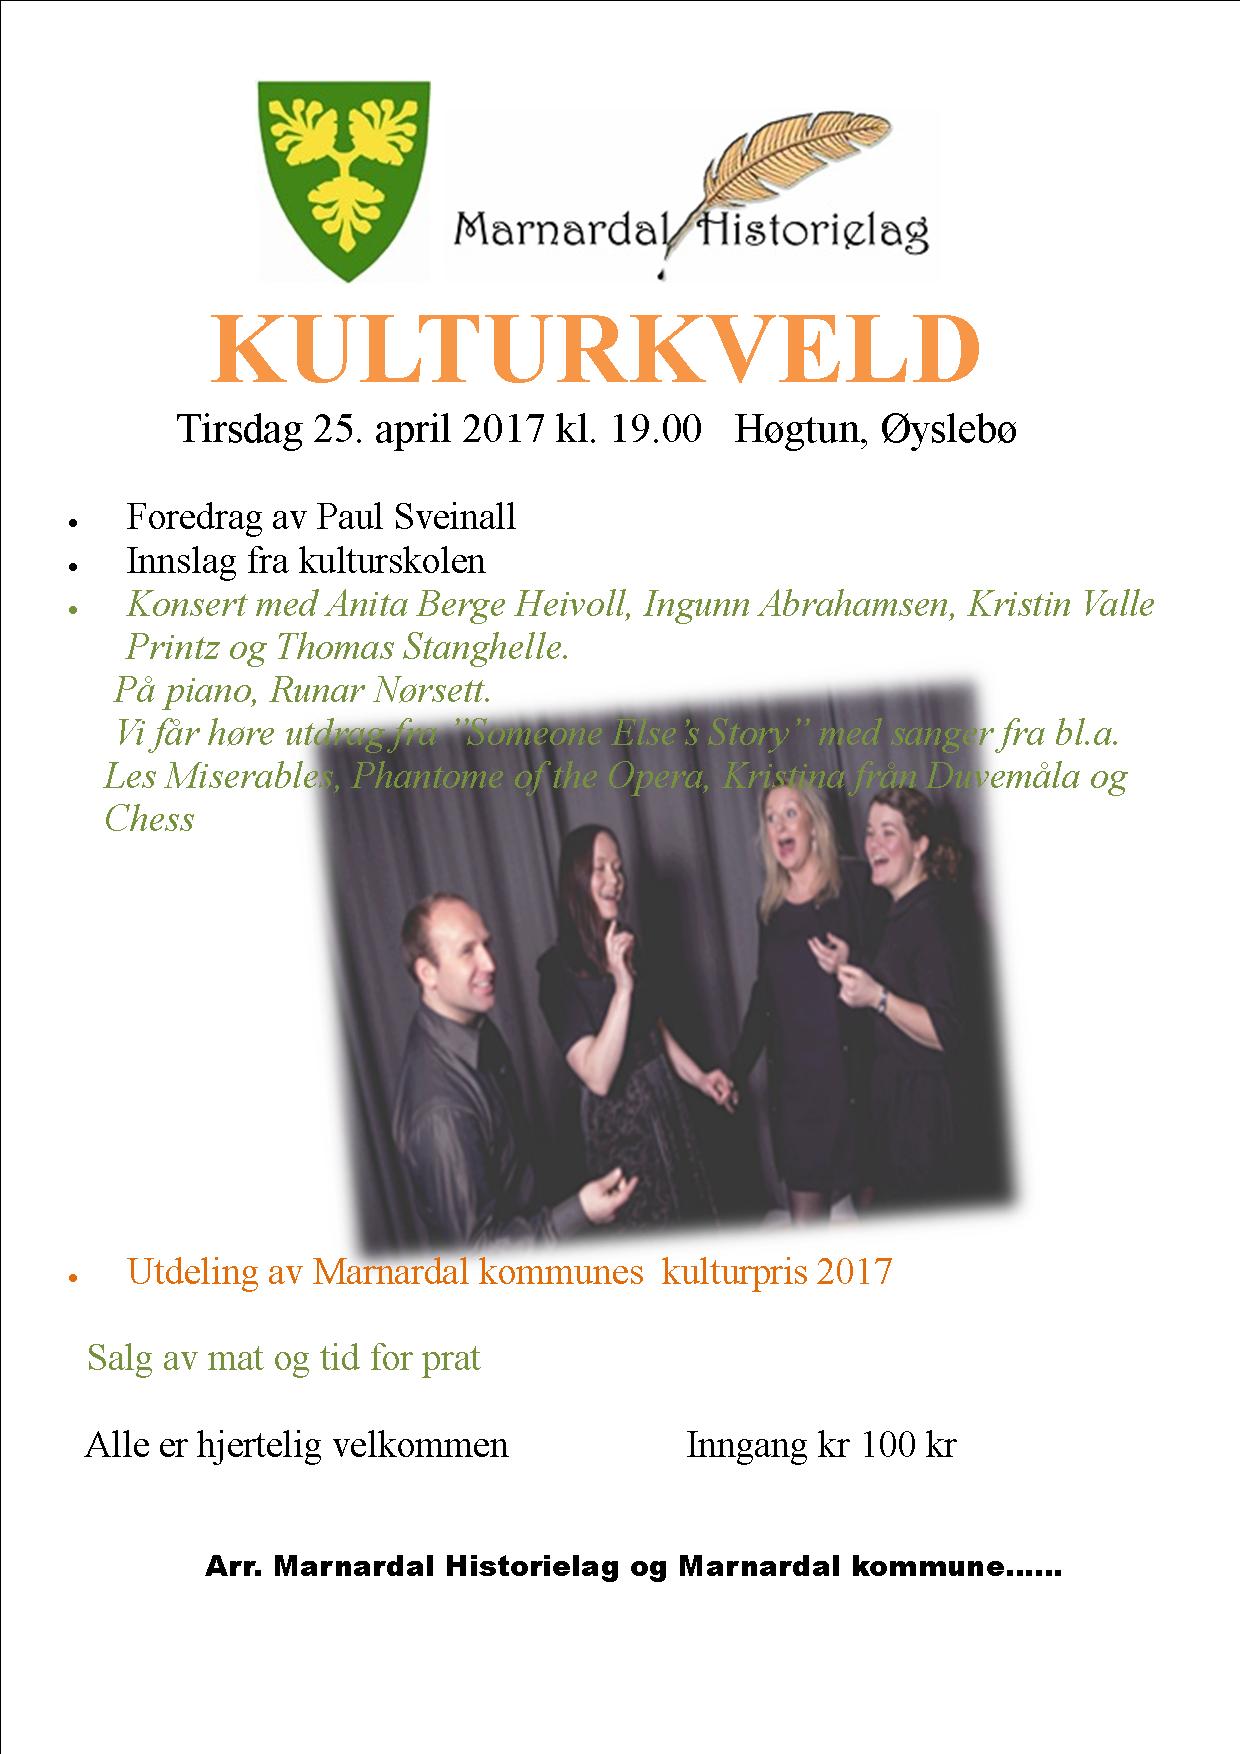 Plakat med program for Kulturkvelden i Marnardal 2017